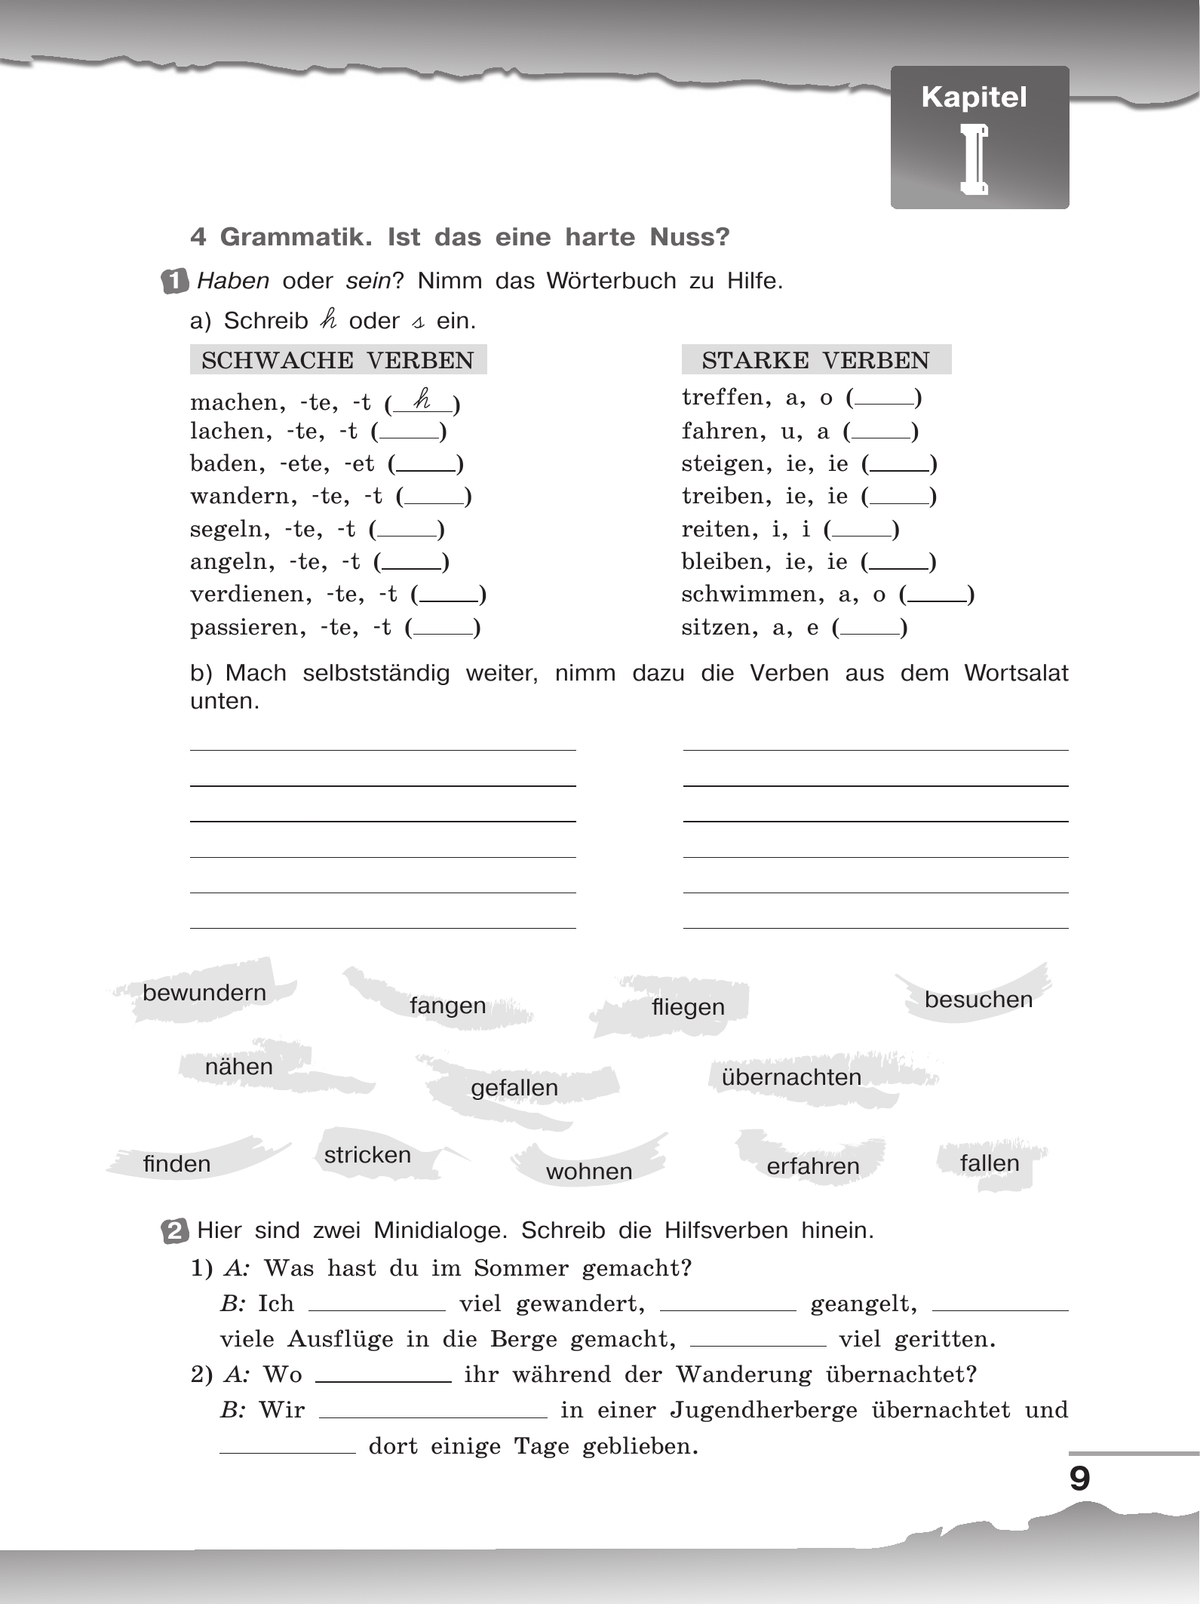 Немецкий язык. Рабочая тетрадь. 8 класс 5